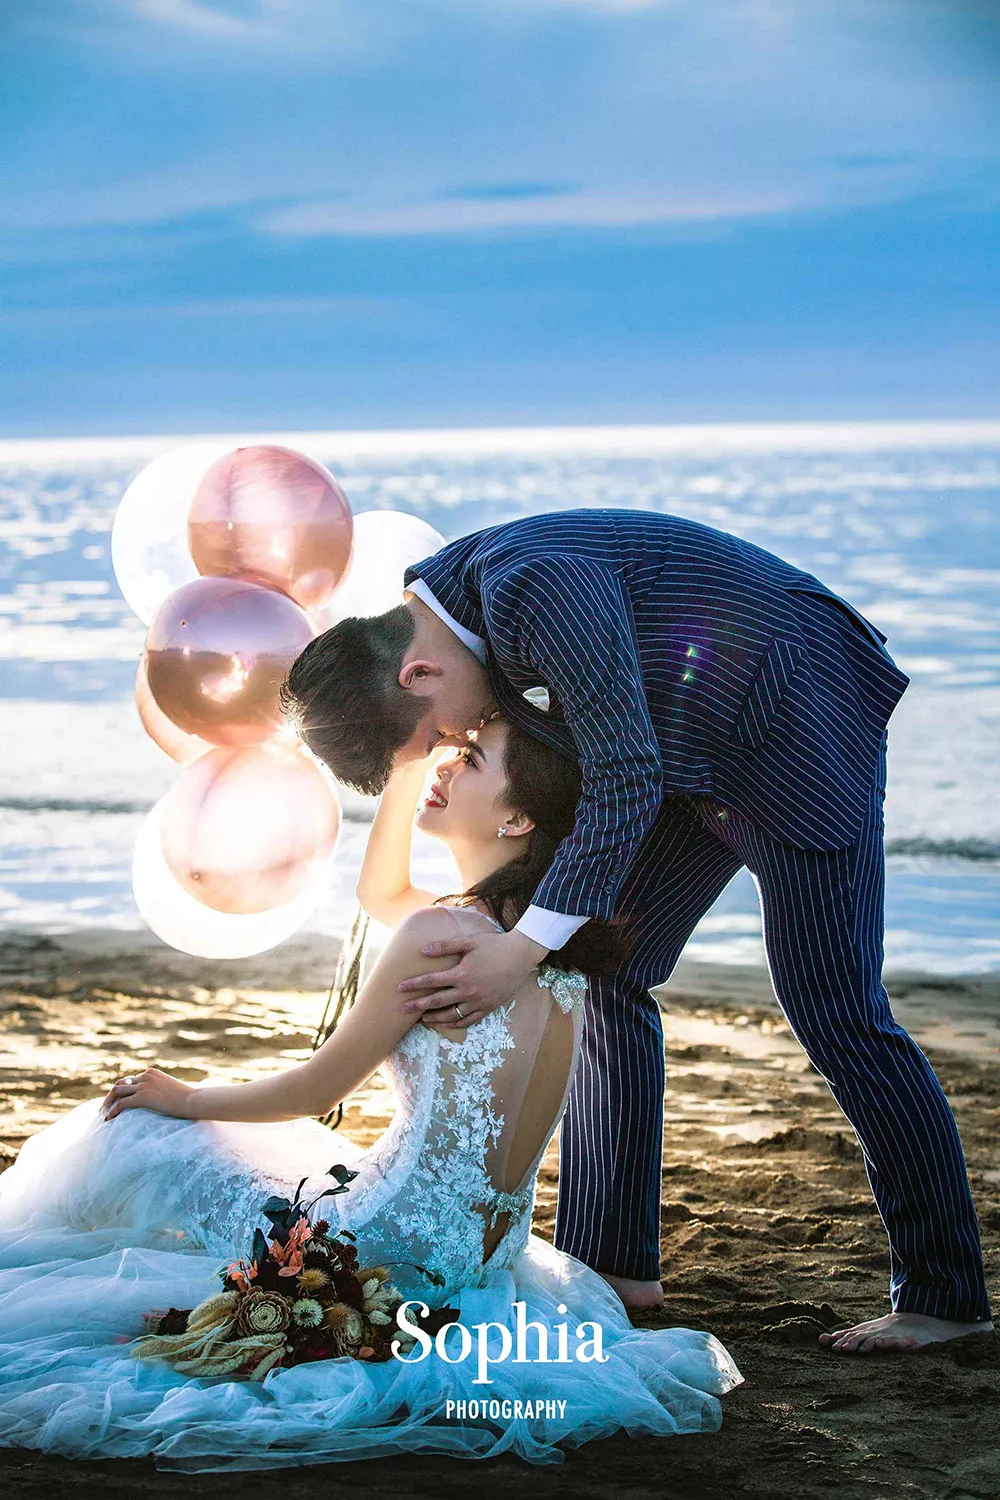 半透明的氣球被光照耀下呈現浪漫氛圍。